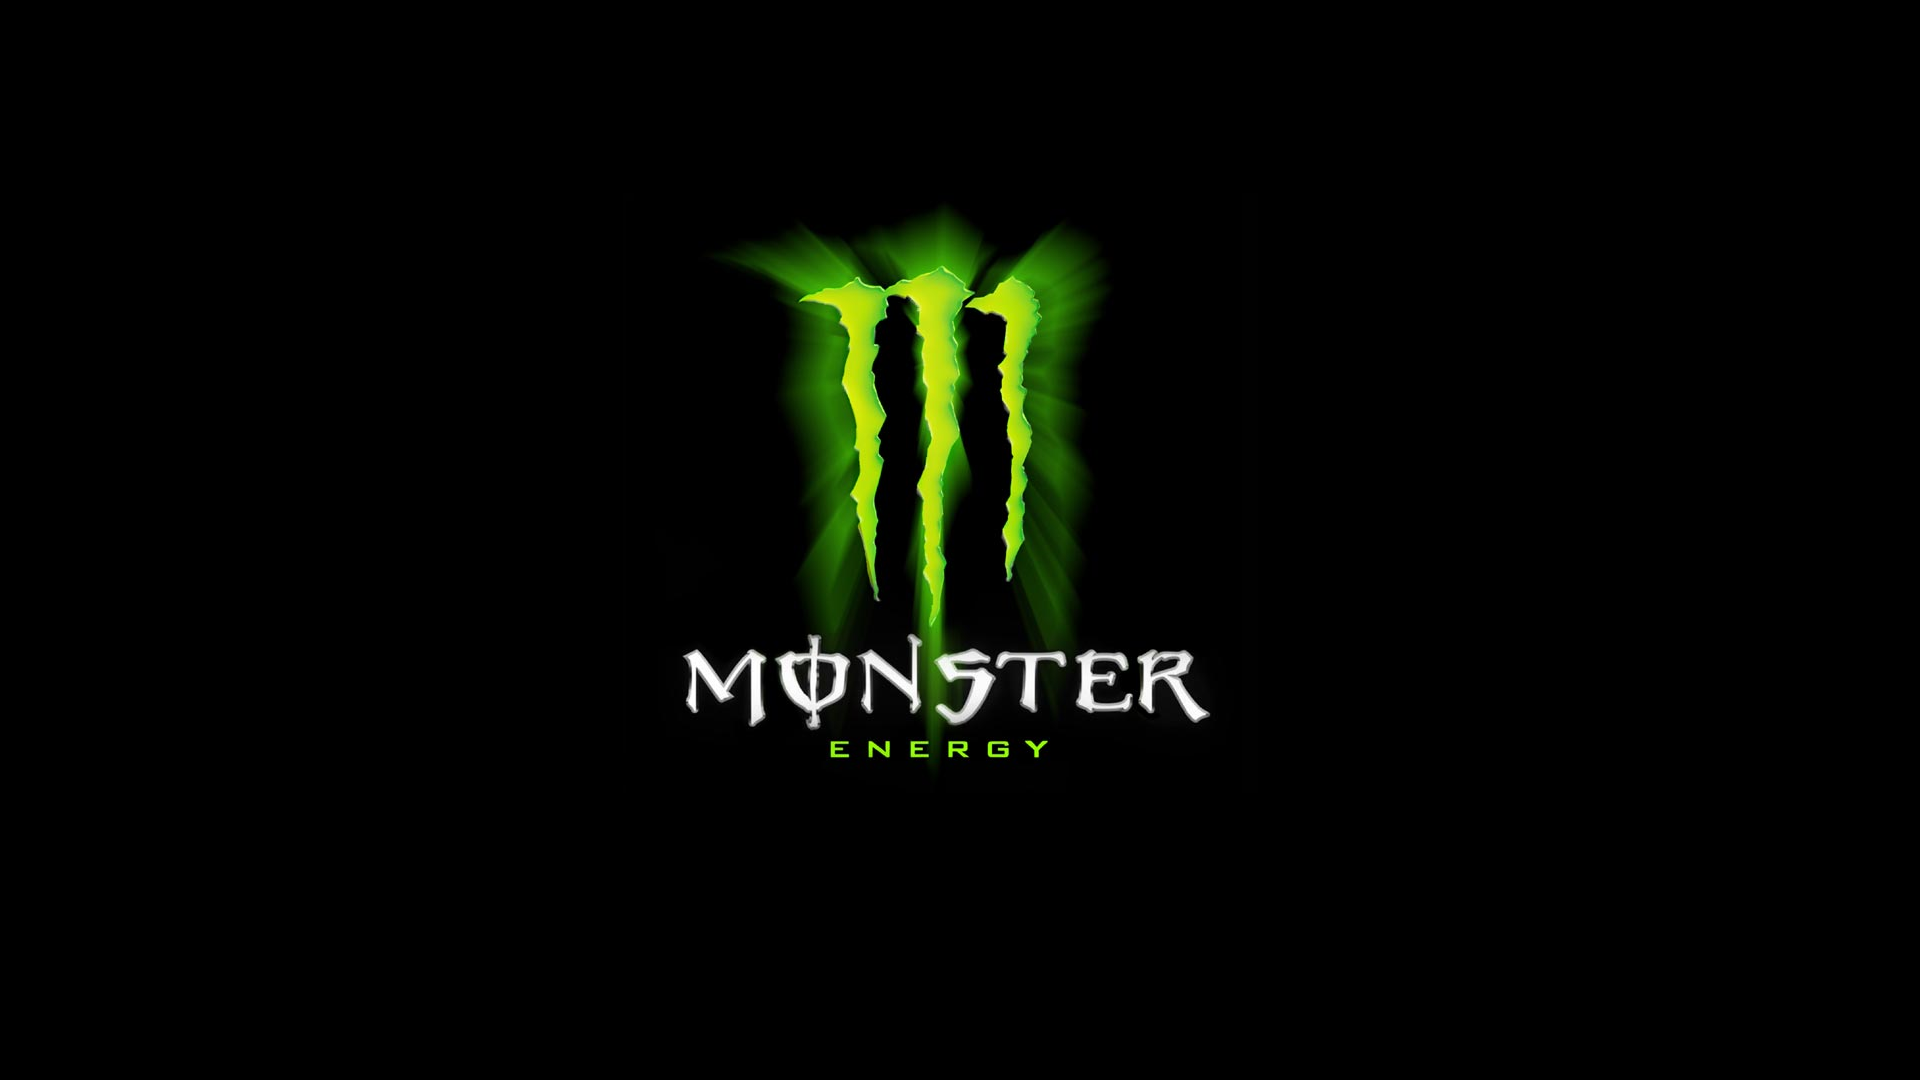 Monster Energy Wallpaper Full HD Search